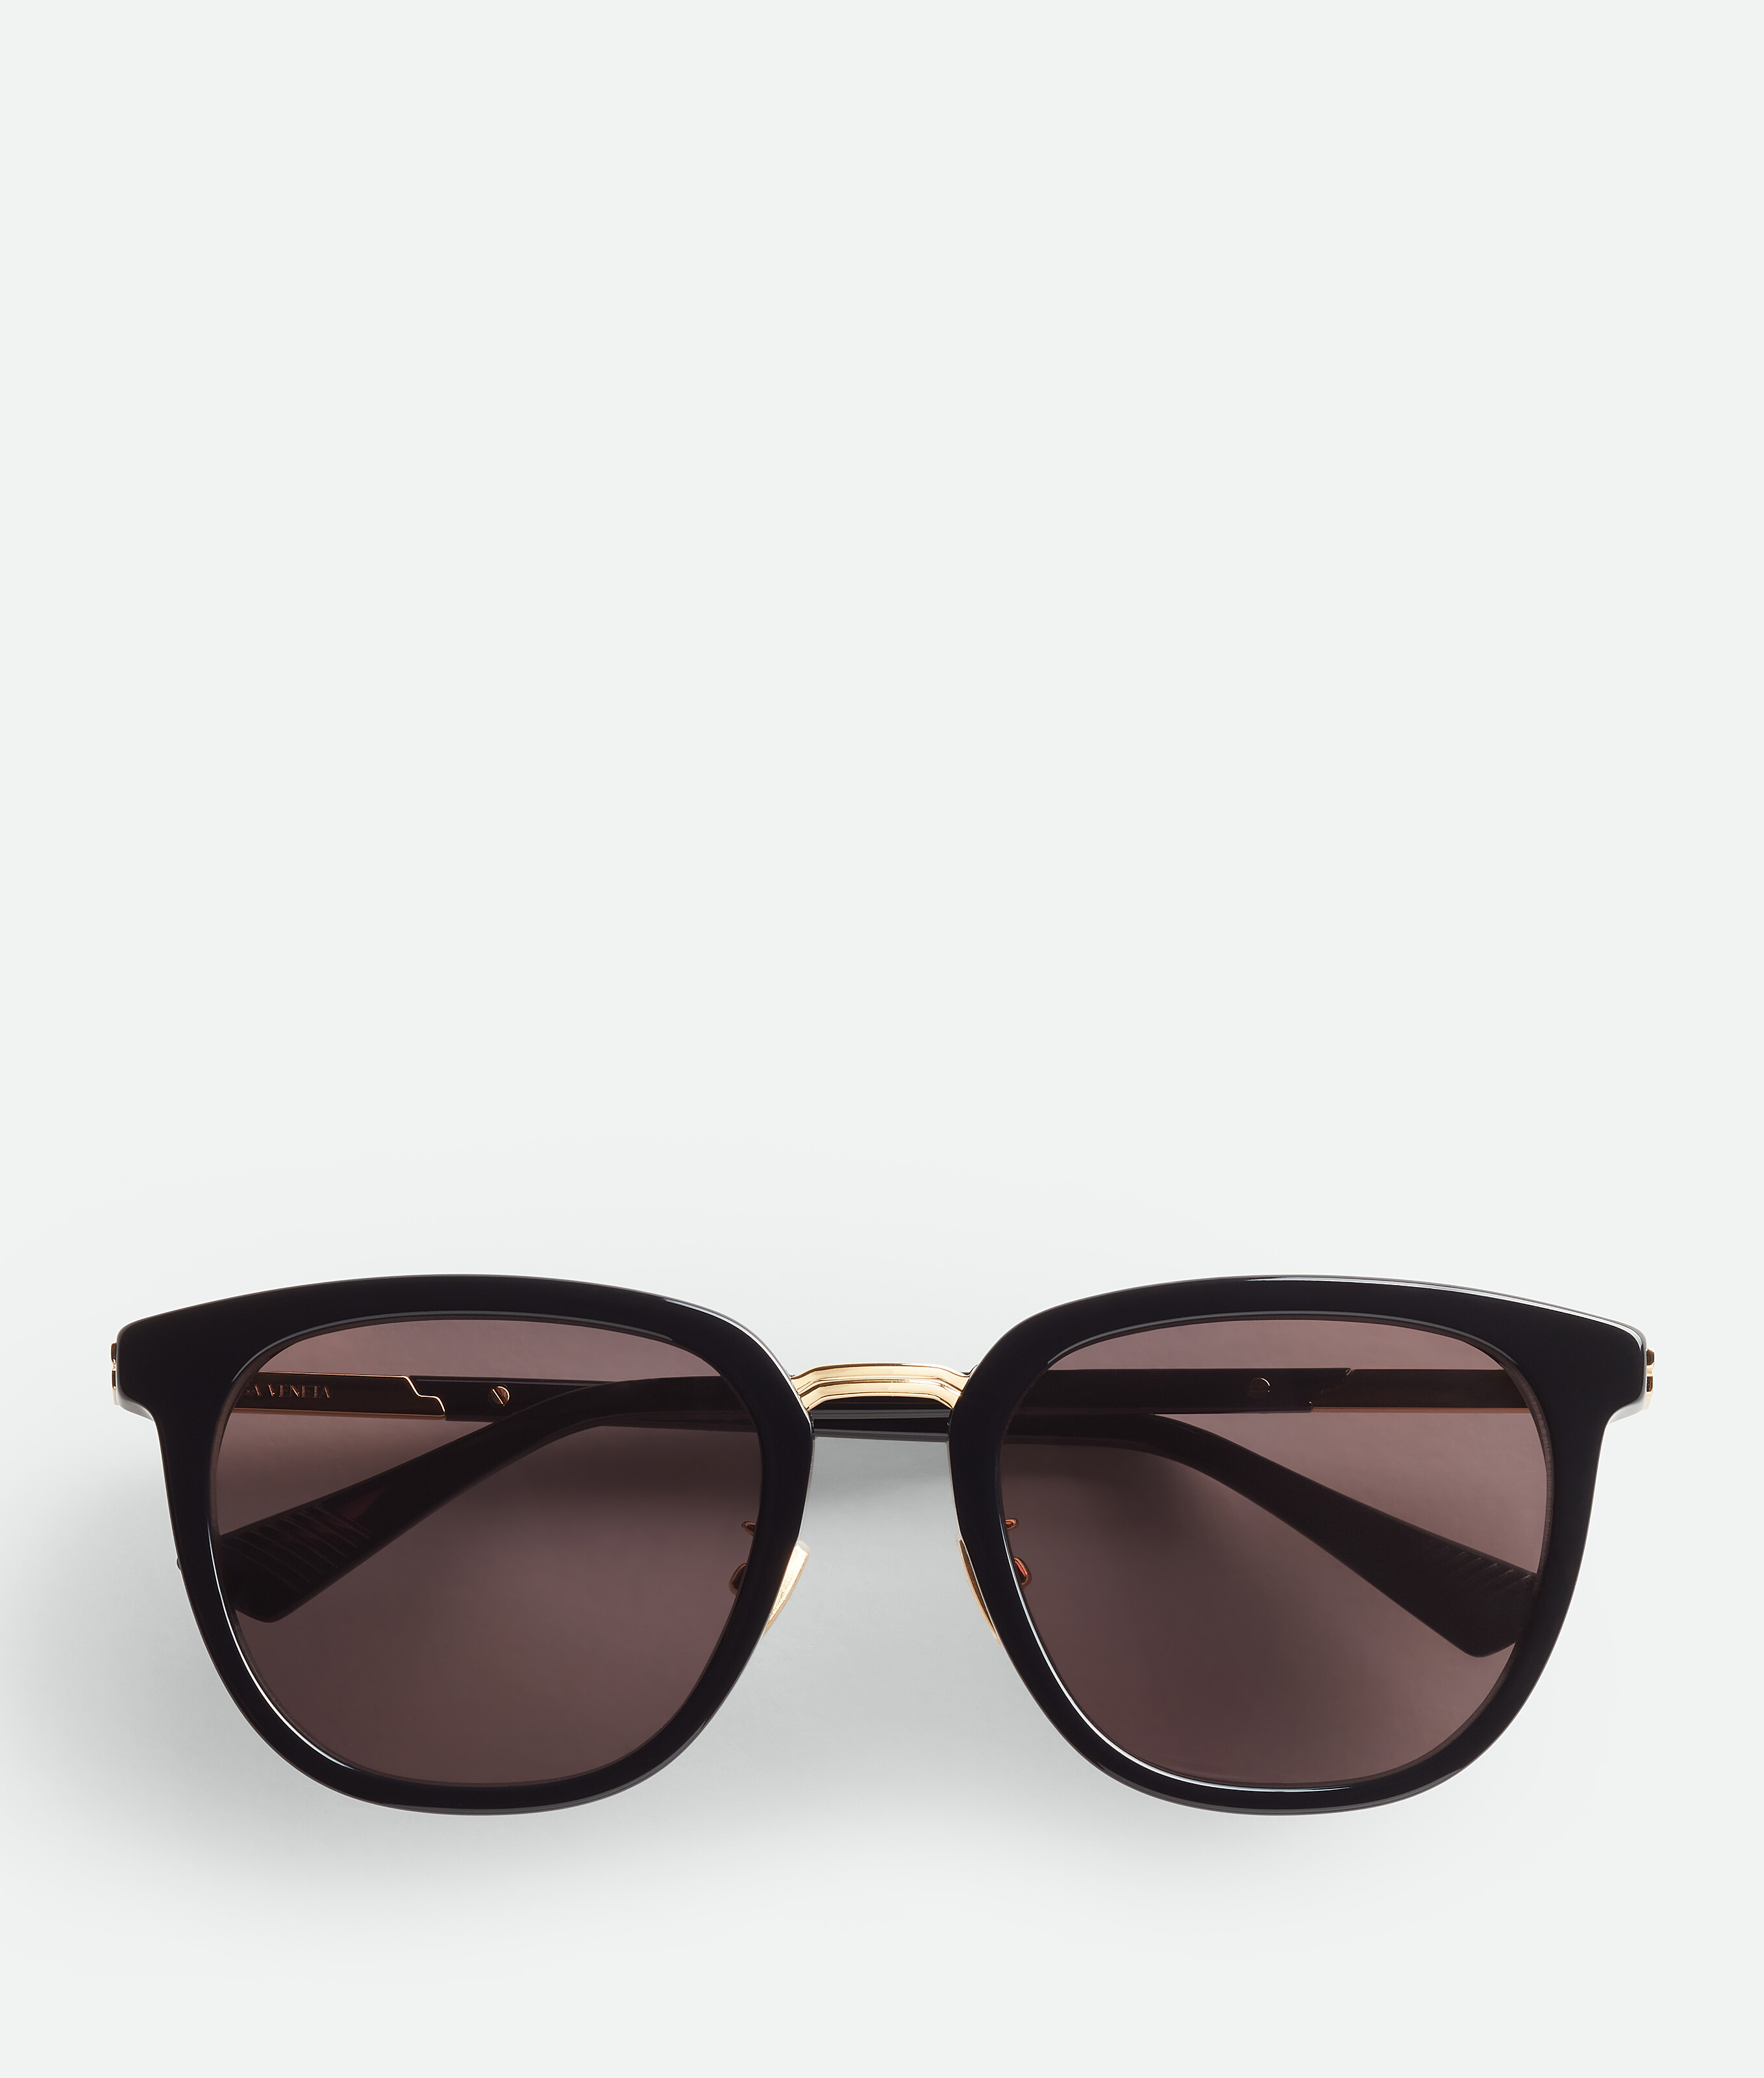 Bottega Veneta Forte Square Sunglasses In Black/grey